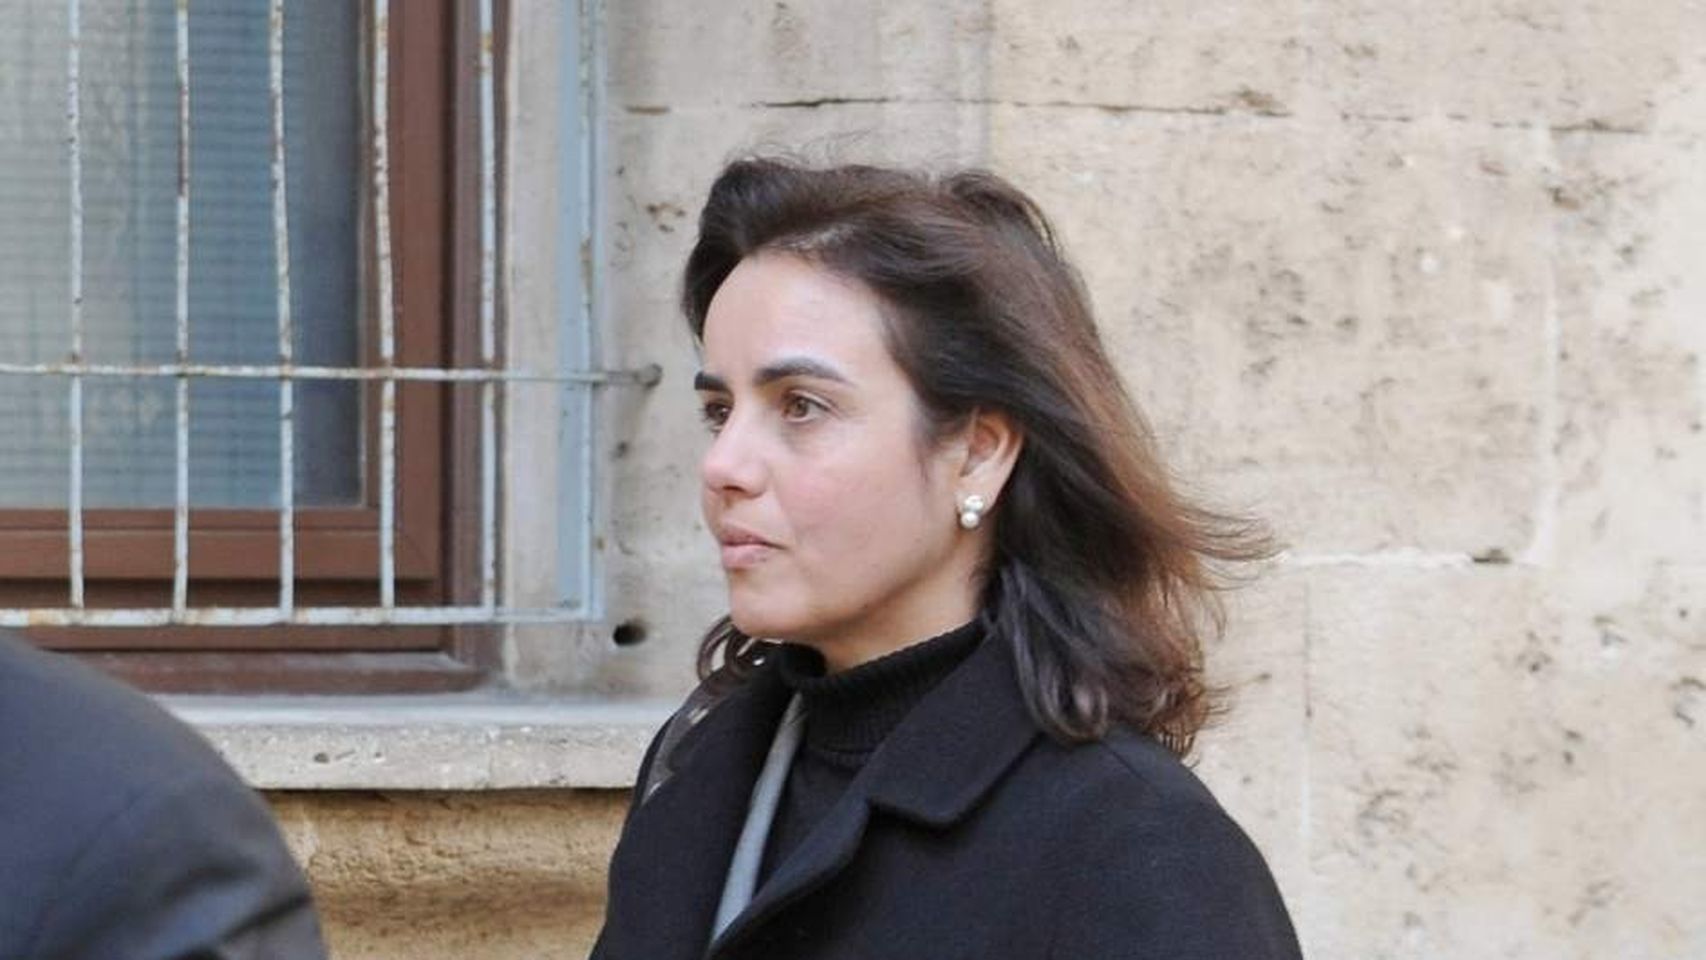 na María Tejeiro en mayo de 2015 cuando acudió a declarar en los juzgados de Palma